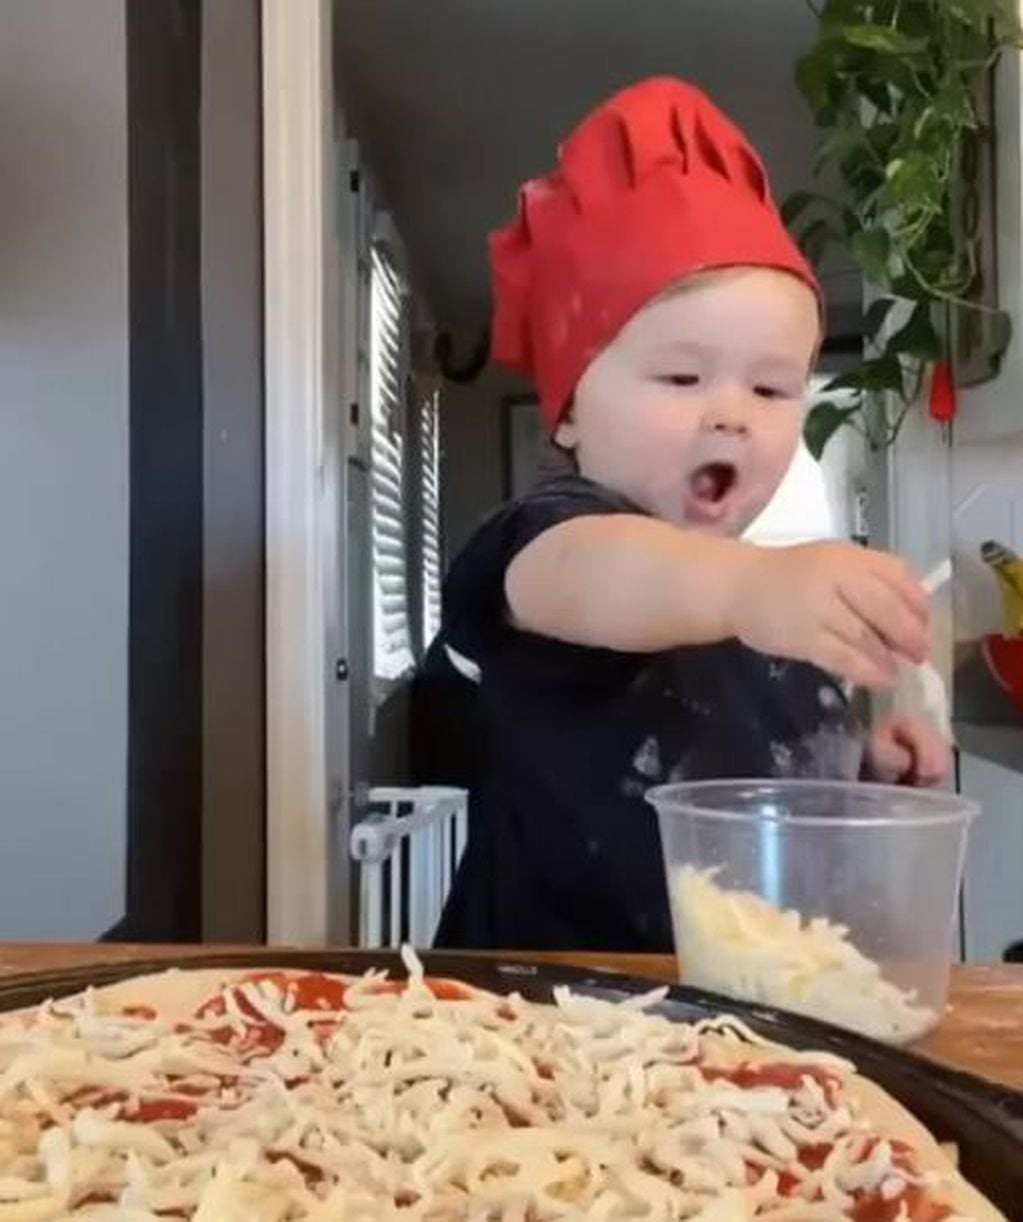 ¡El pequeño parece tener todas las virtudes de un futuro cocinero profesional!